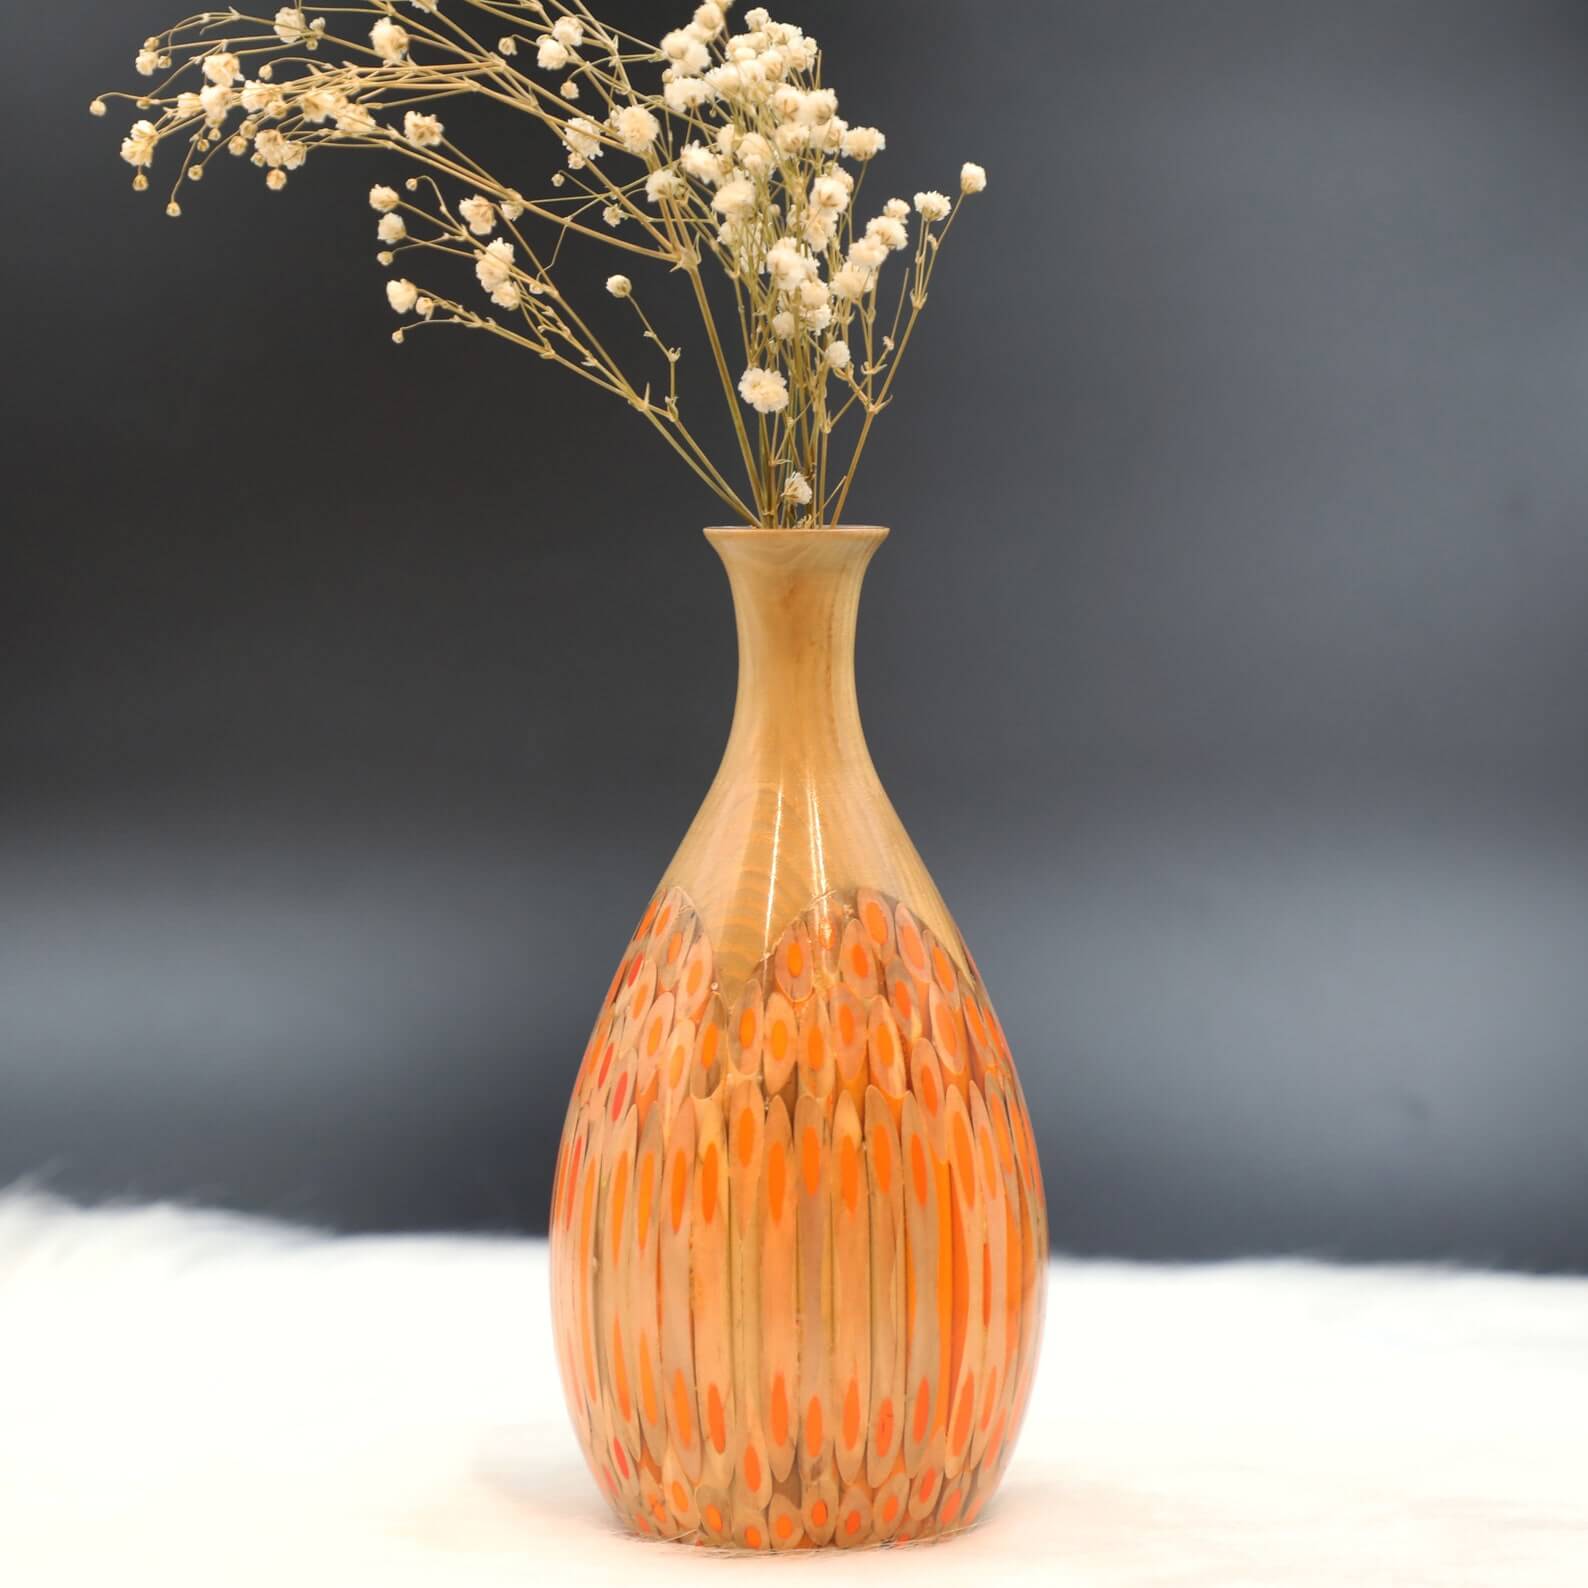 Primar_Orange_Handmade Resin Vase for Dry Flower